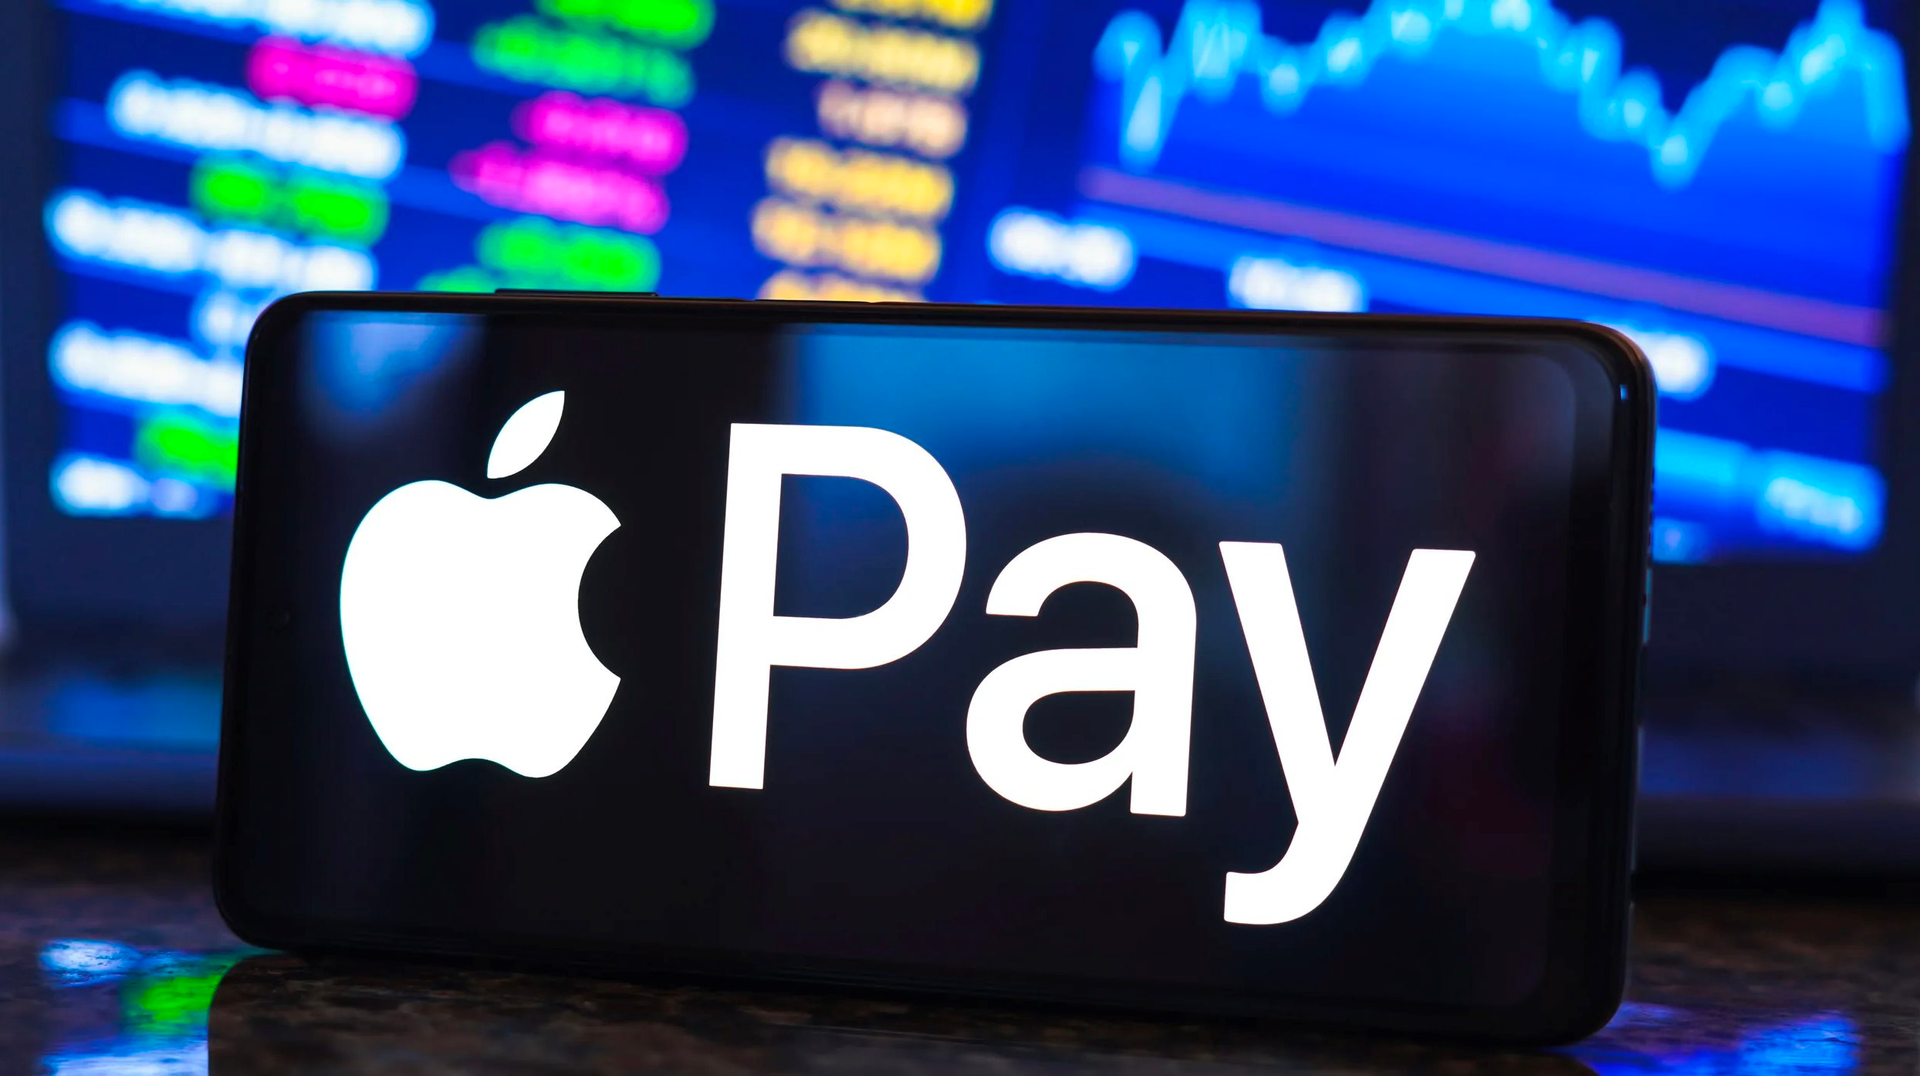 Apple Pay chính thức vào Việt Nam: Thanh toán được bằng iPhone, iPad, Mac, uống cafe, mua hàng Shopee hay đi taxi đều có thể sử dụng